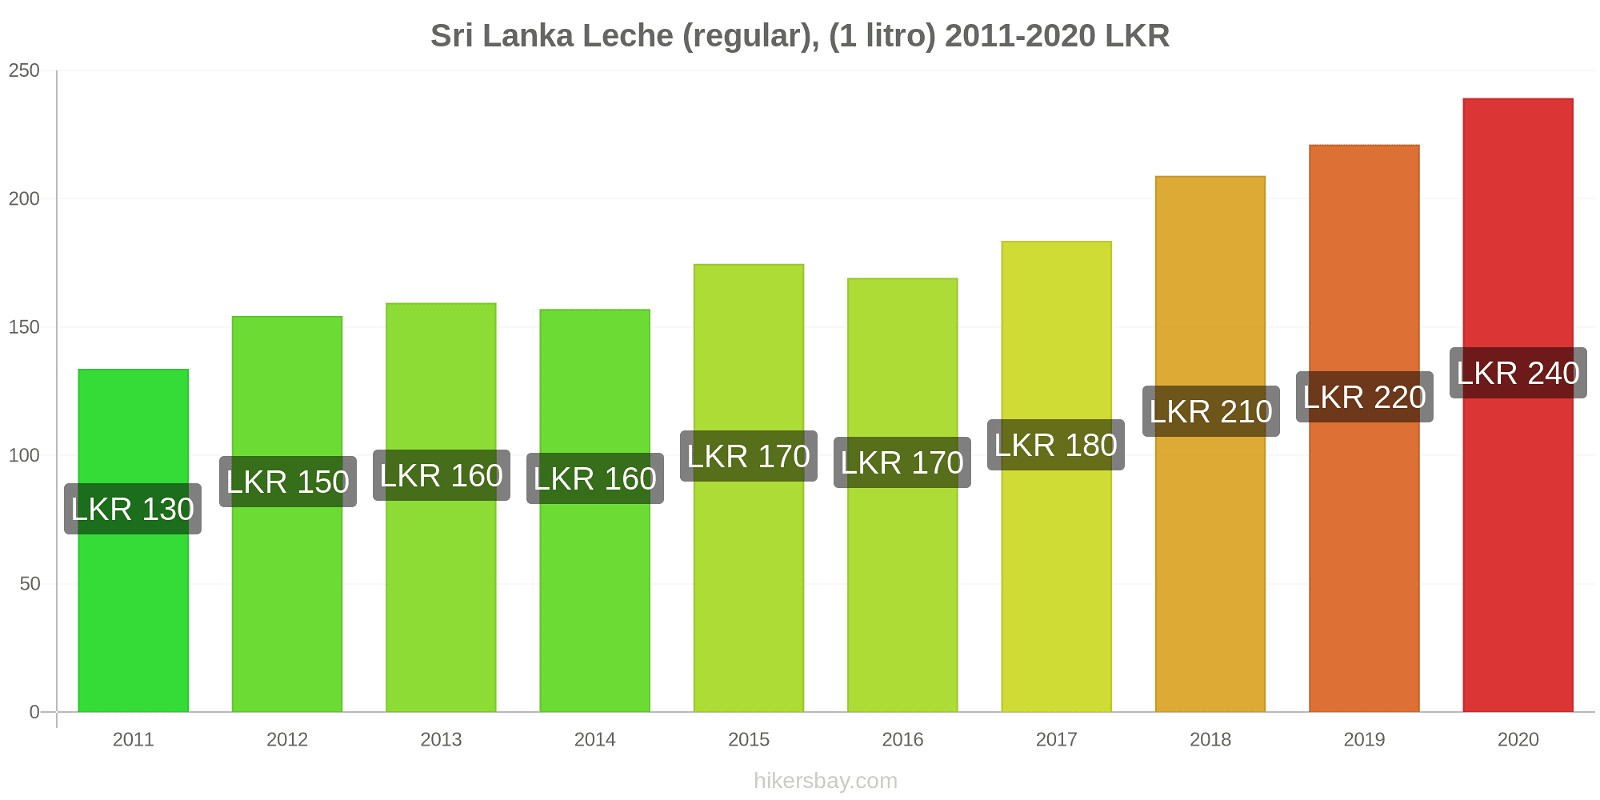 Sri Lanka cambios de precios Leche (Regular), (1 litro) hikersbay.com